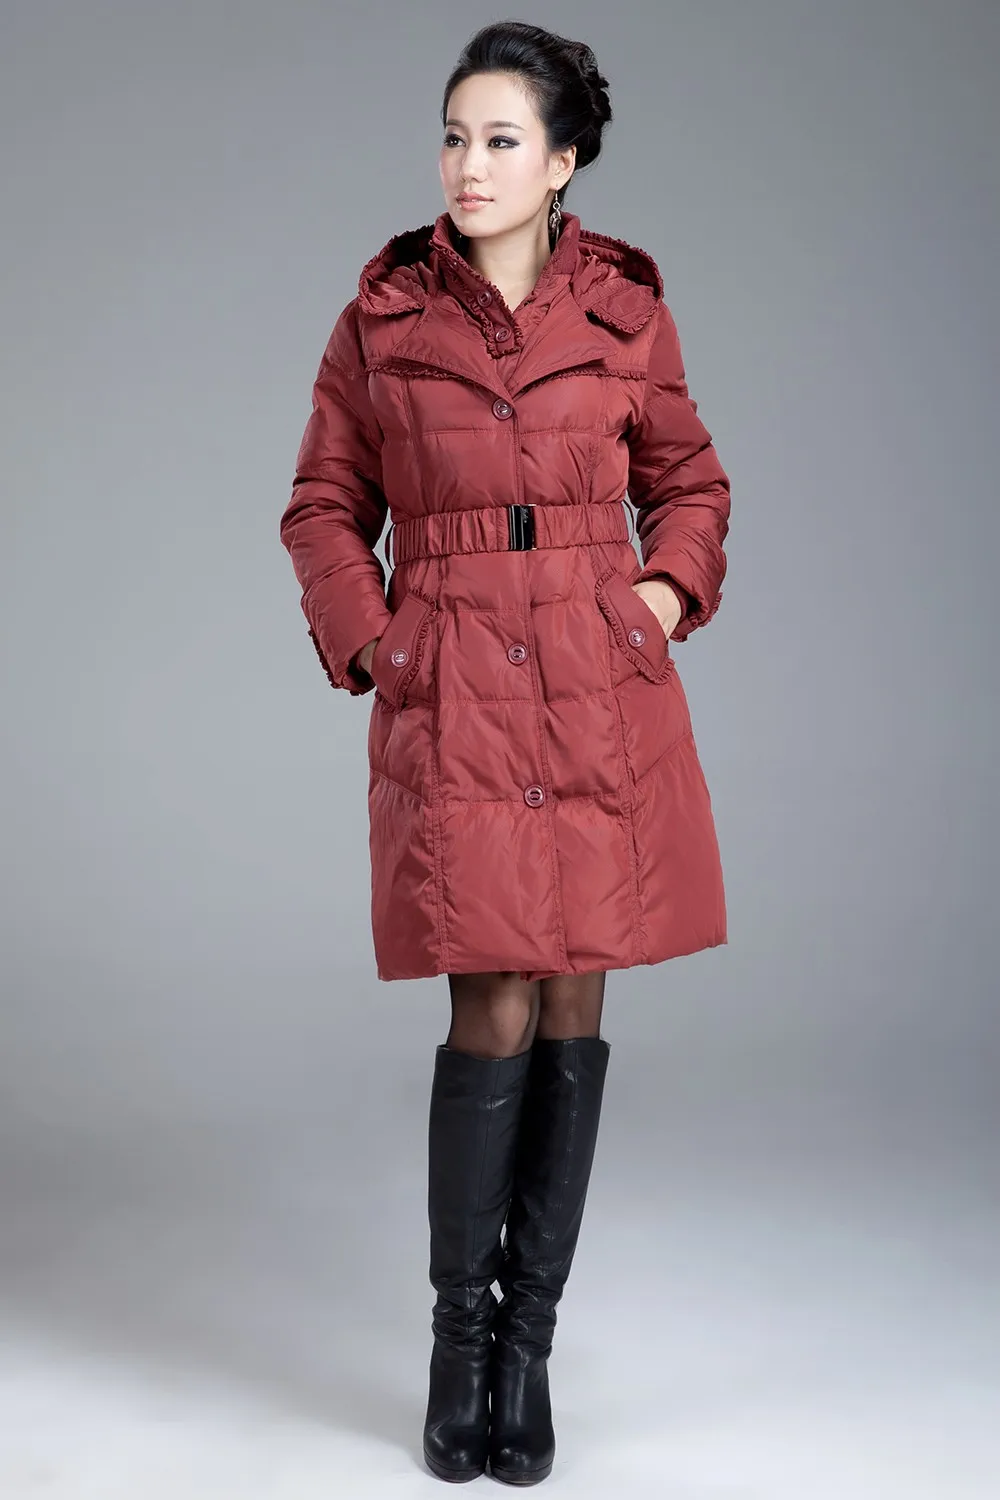 Зимняя куртка женская парка толстый теплый белый утиный пух куртки для женщин тонкий капюшон длинные пальто женщина плюс размер 4XL HJ465